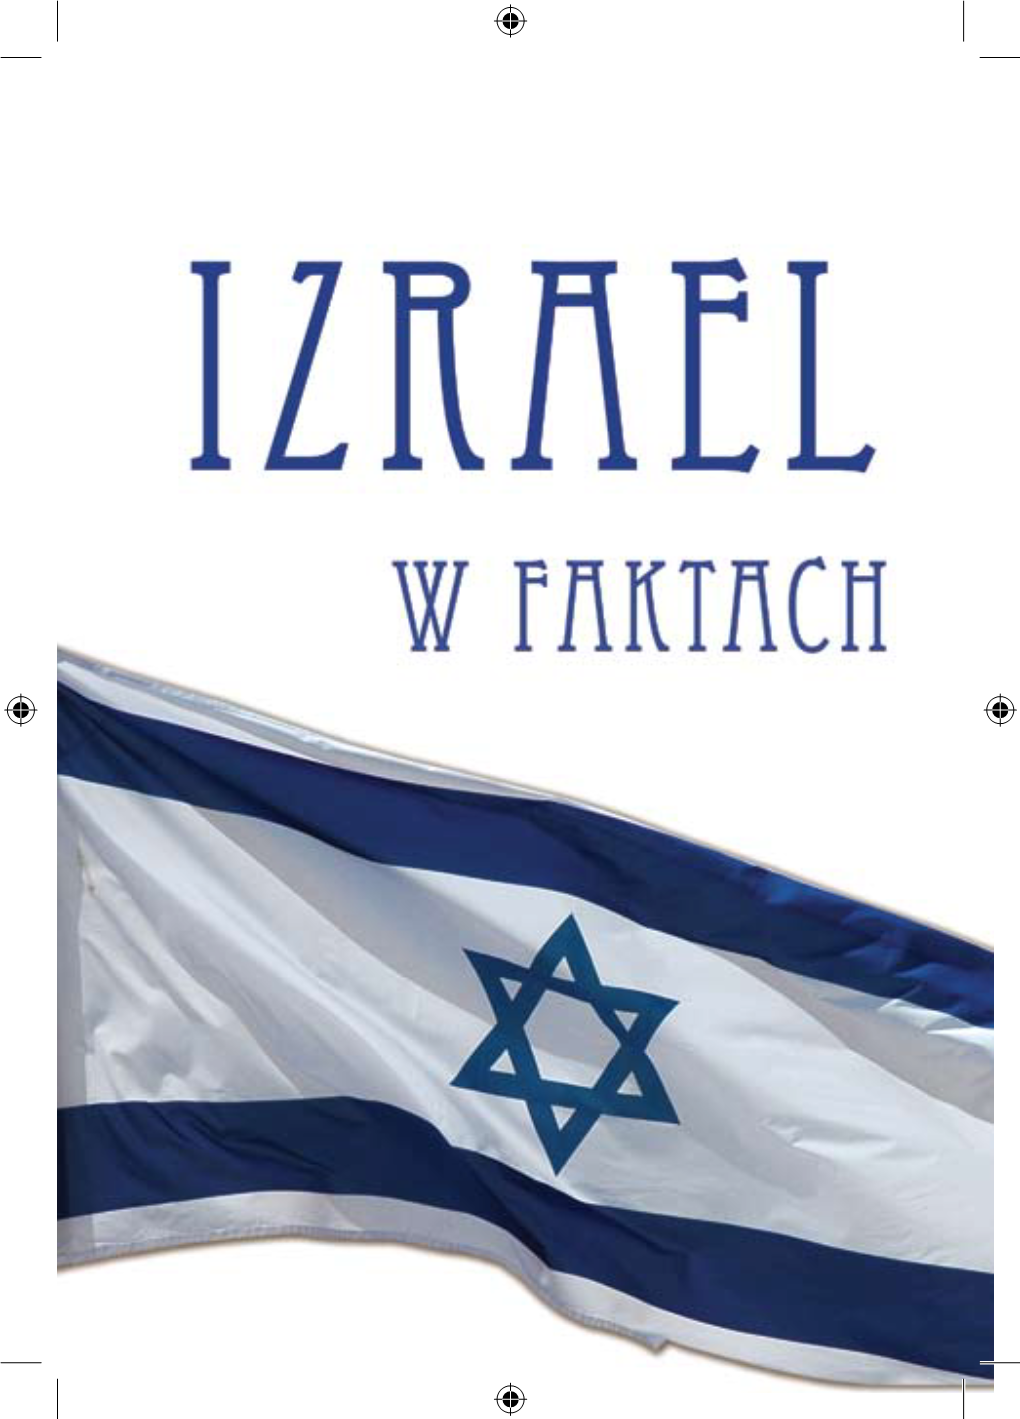 Izrael W FAKTACH HISTORIA L 9